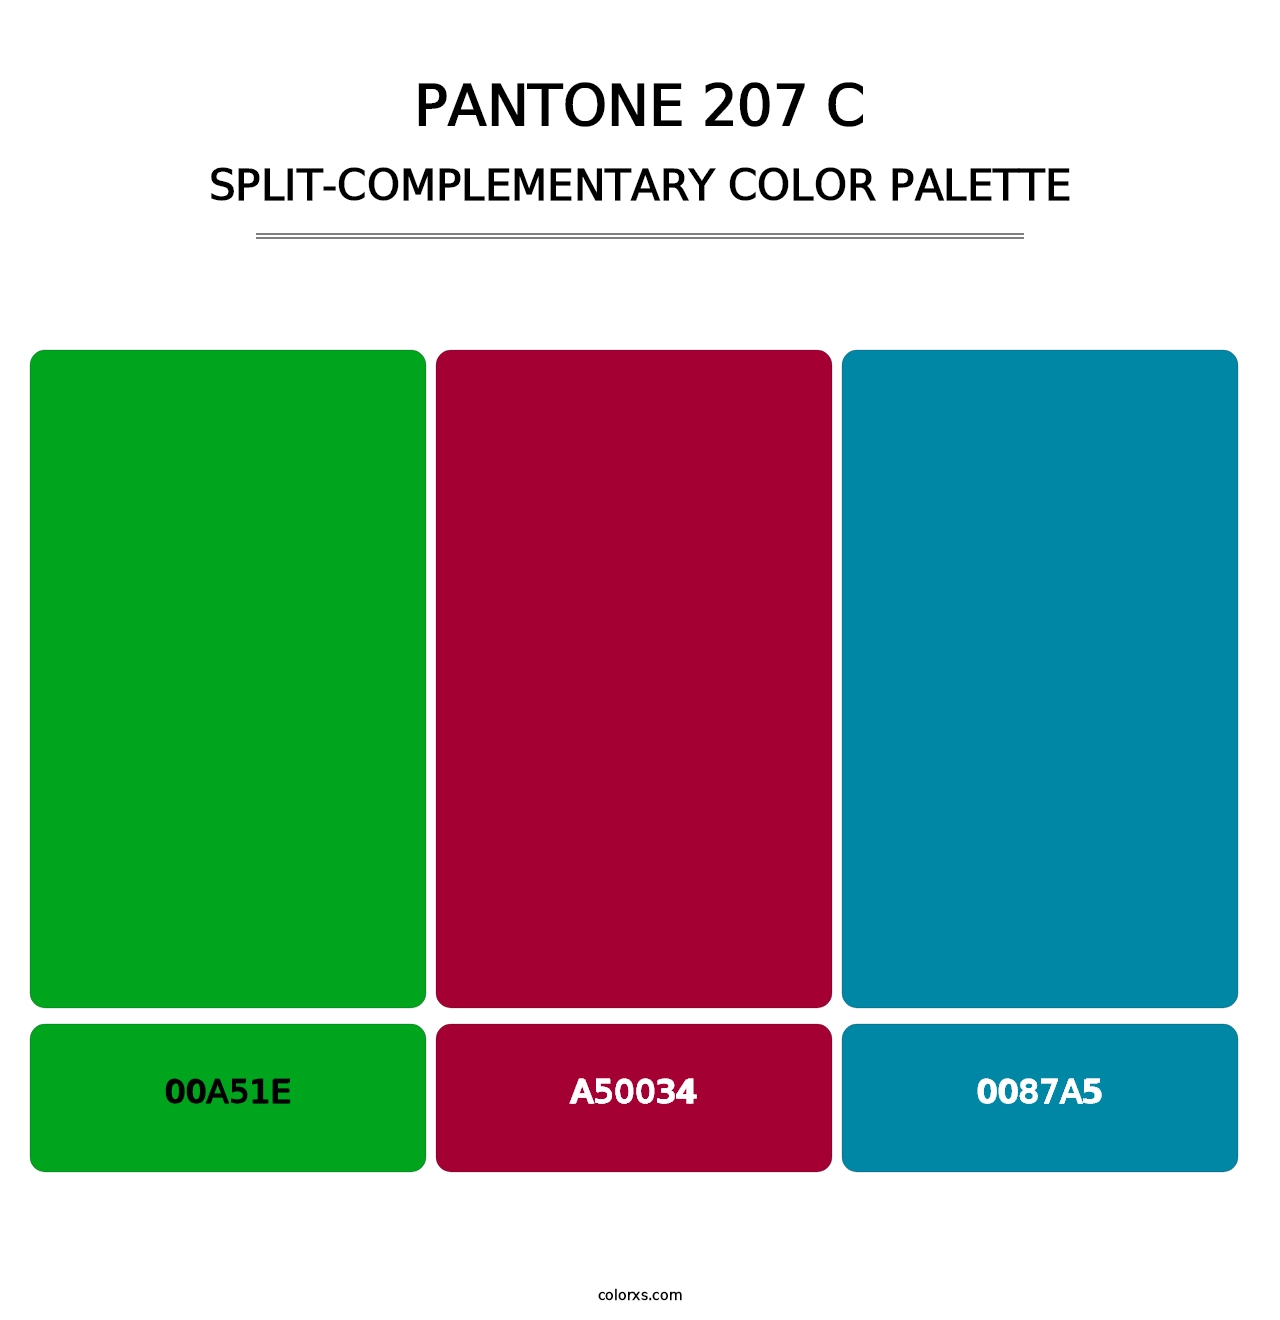 PANTONE 207 C - Split-Complementary Color Palette